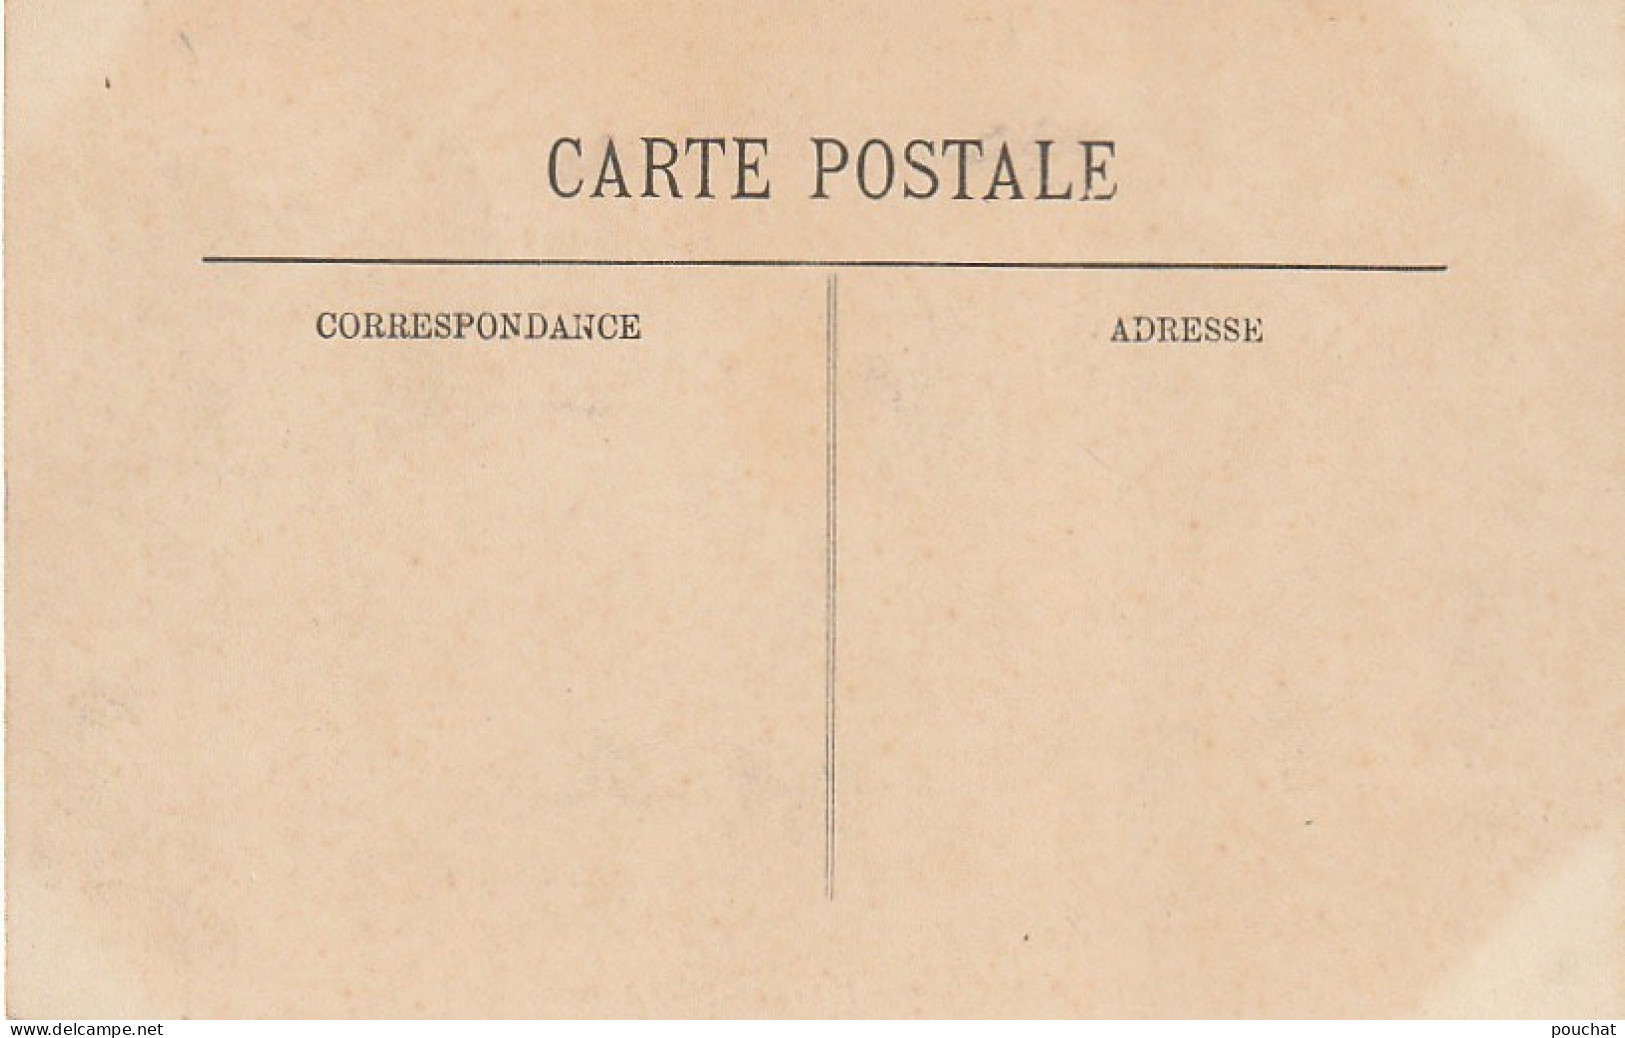 Z++ 3-(75) INONDATIONS DE PARIS ( JANVIER 1910 ) - PLACE DE ROME - COSMOPOLITE HOTEL - 2 SCANS - Inondations De 1910